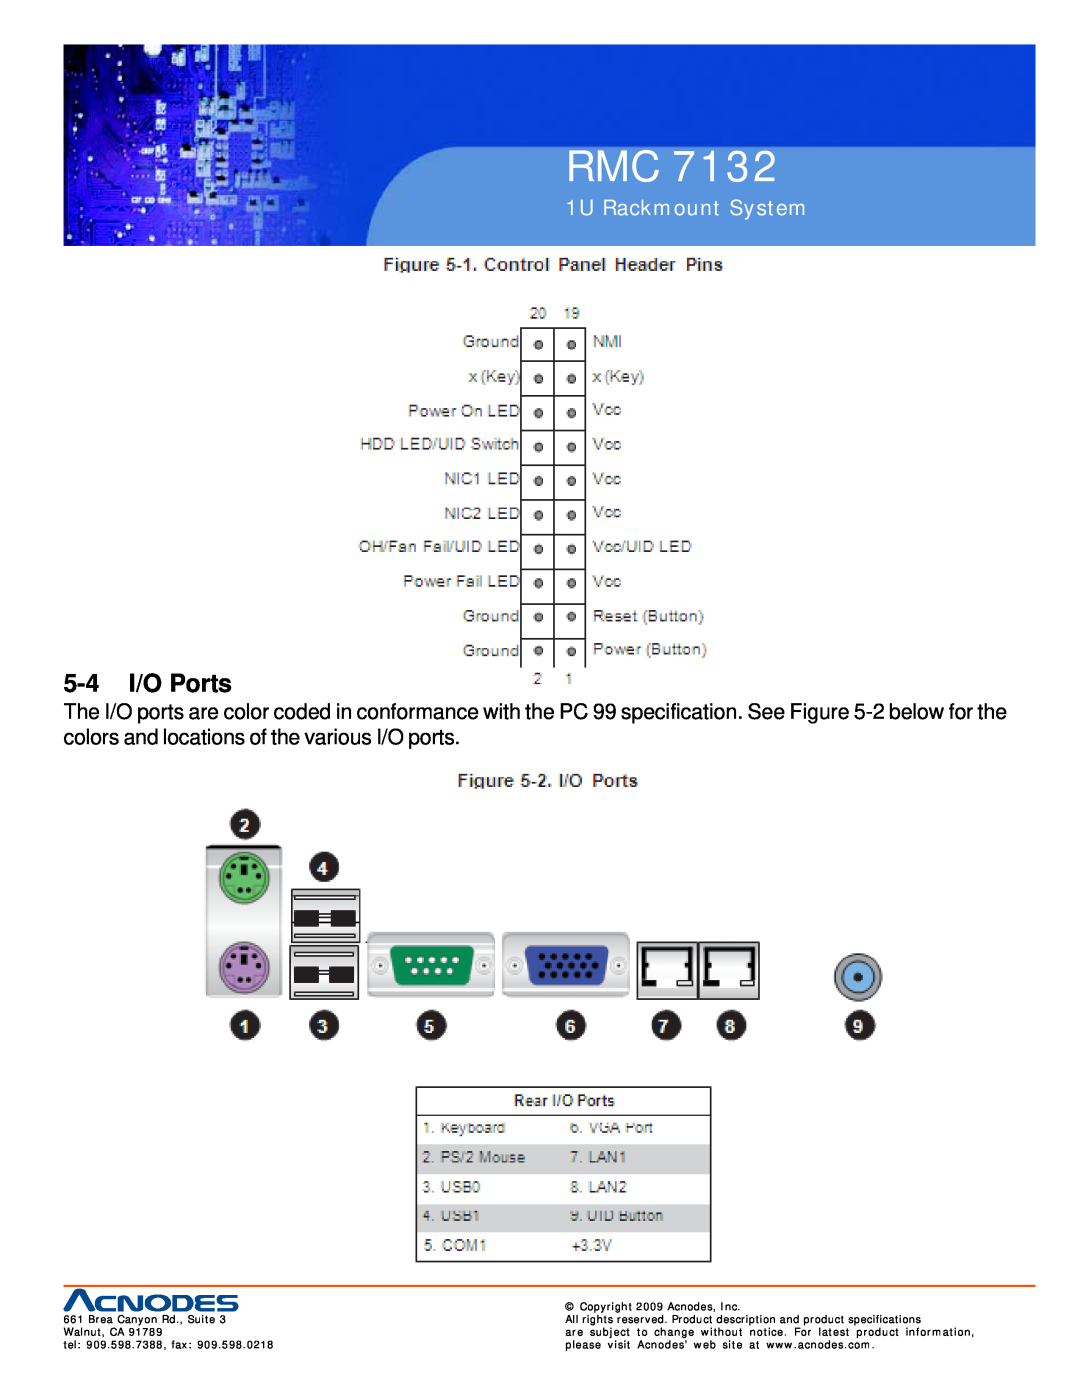 Acnodes RMC 7132 user manual 5-4 I/O Ports, 1U Rackmount System 